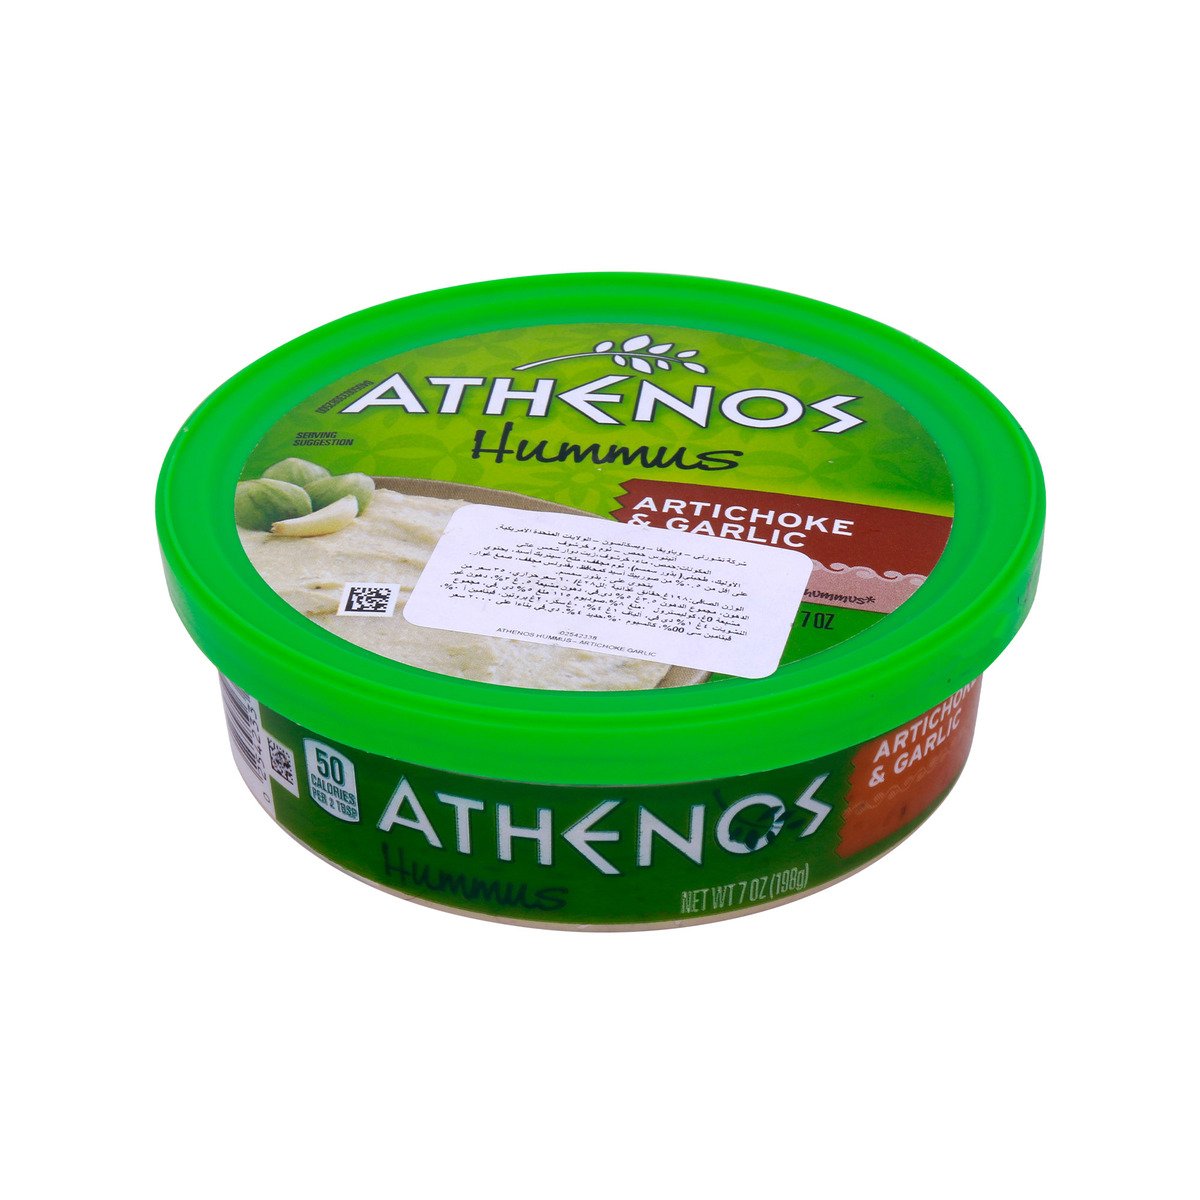 Athenos Hummus Artichoke & Garlic 198g